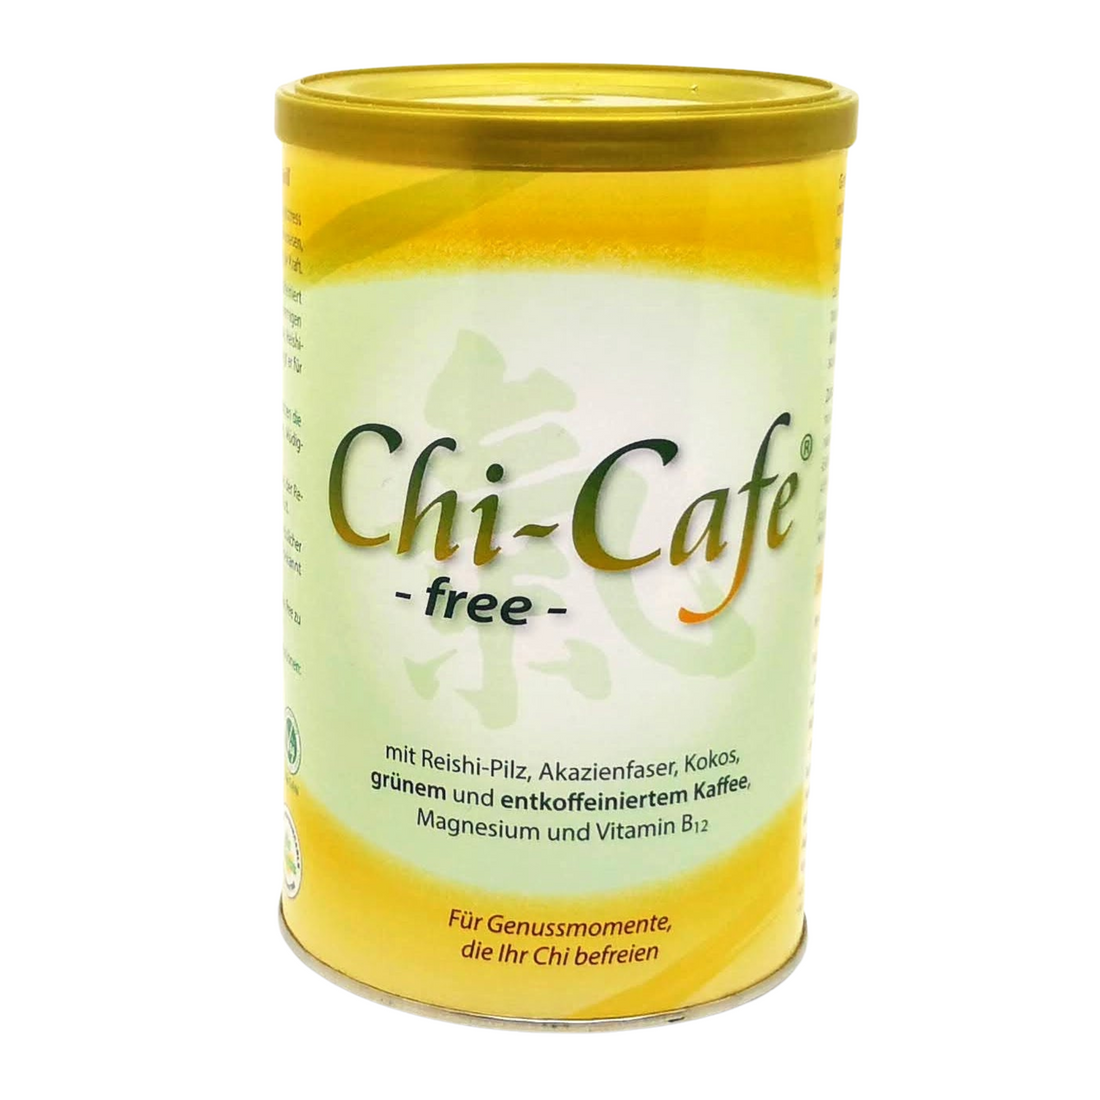 Chi Café free